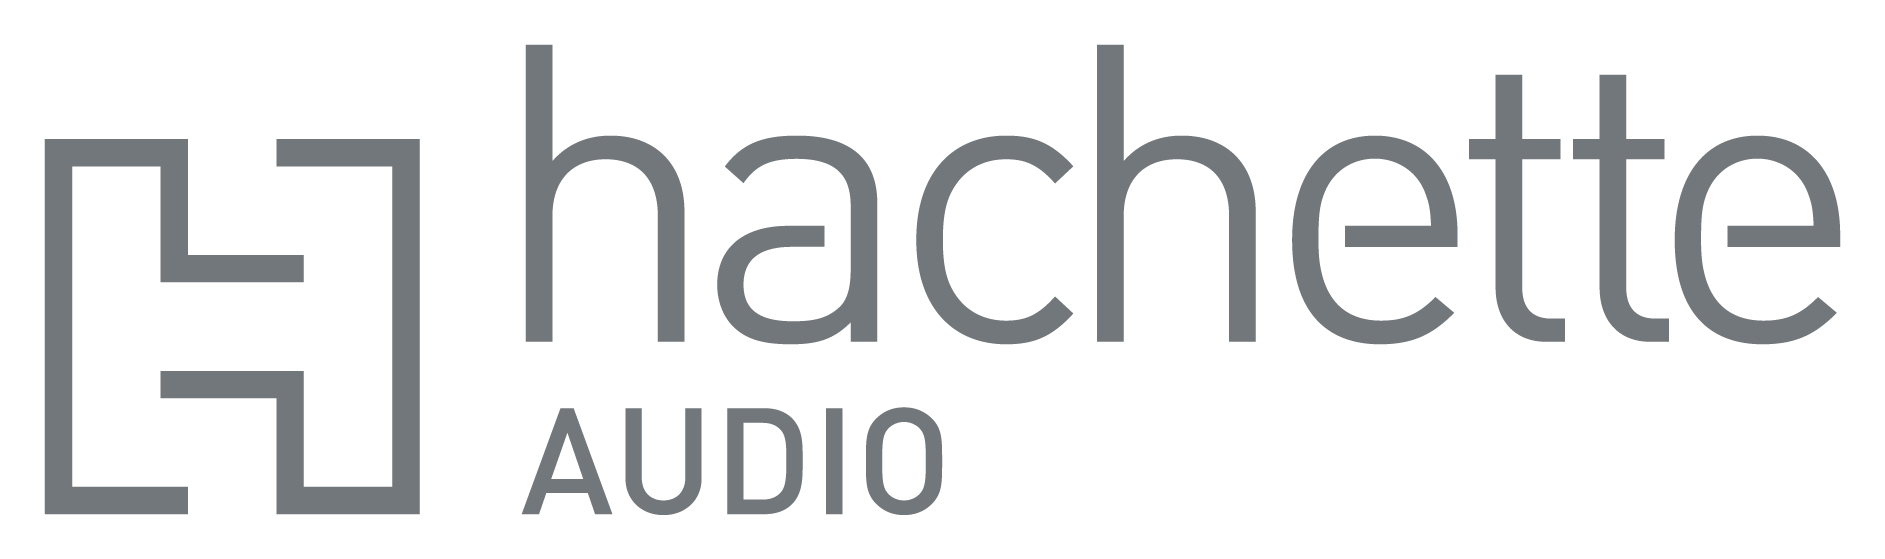 hachette audio logo 24in48 Readathon